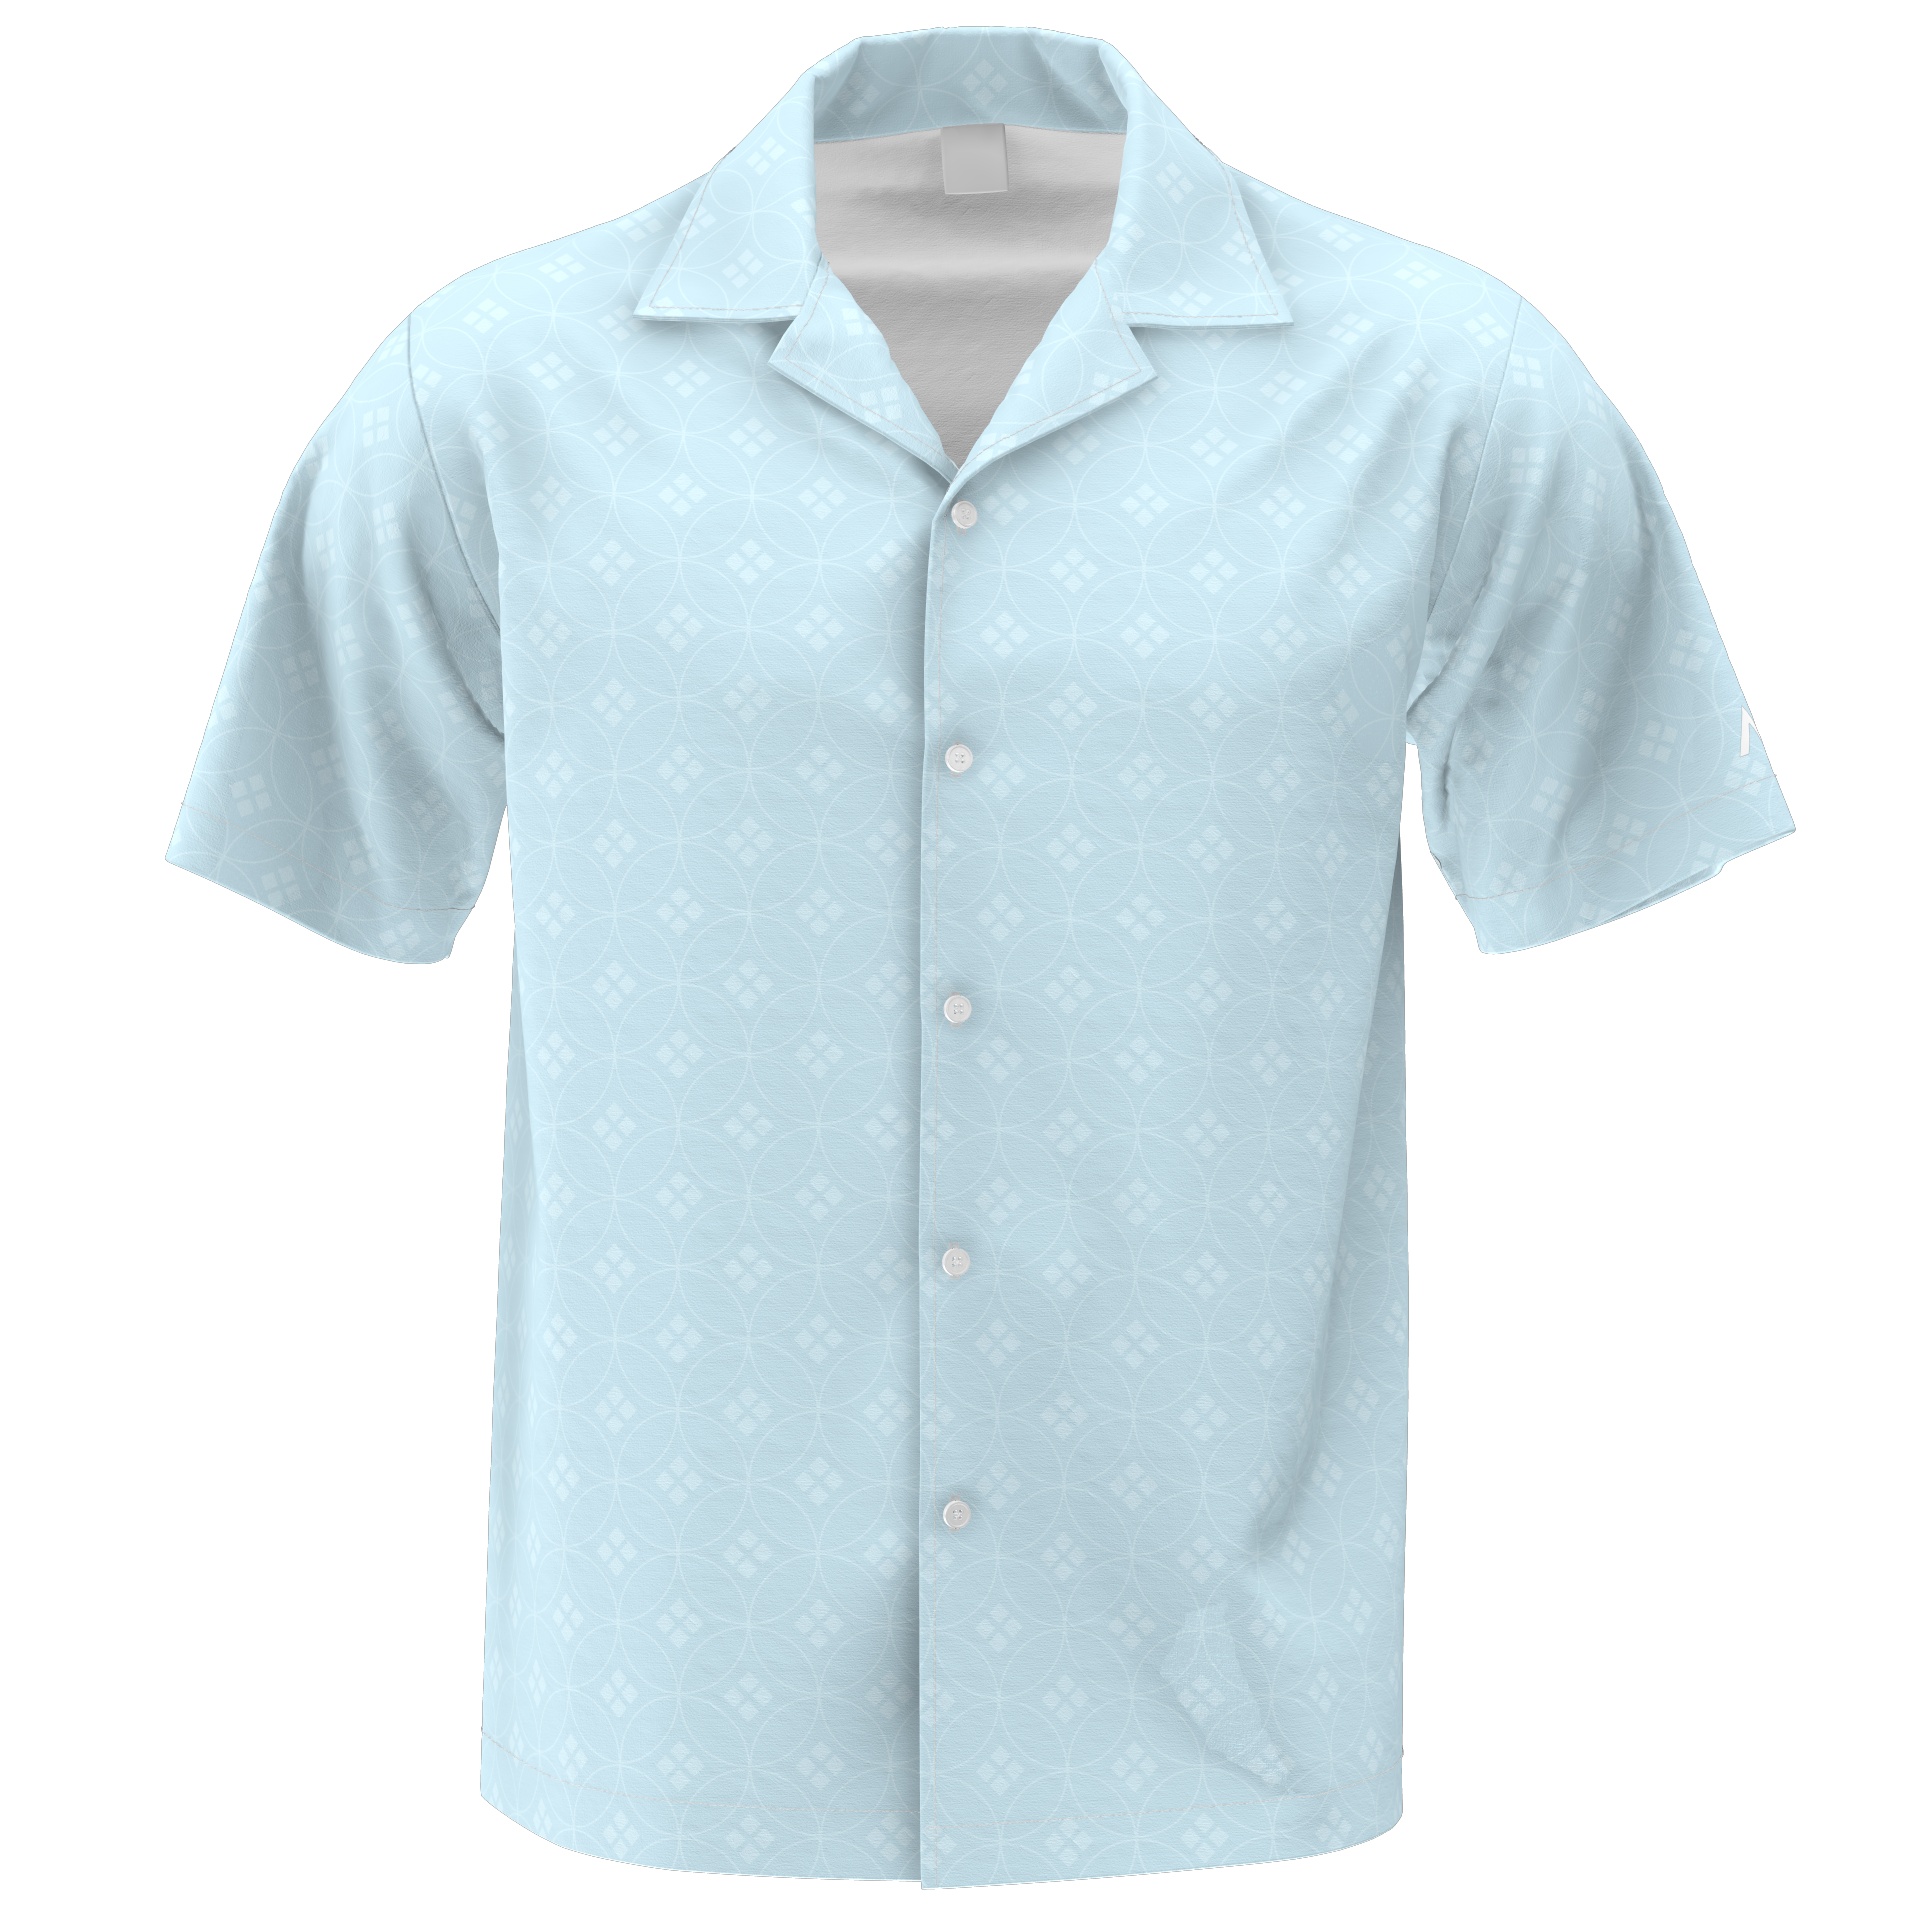 Powder Blue - Button Down Shirt